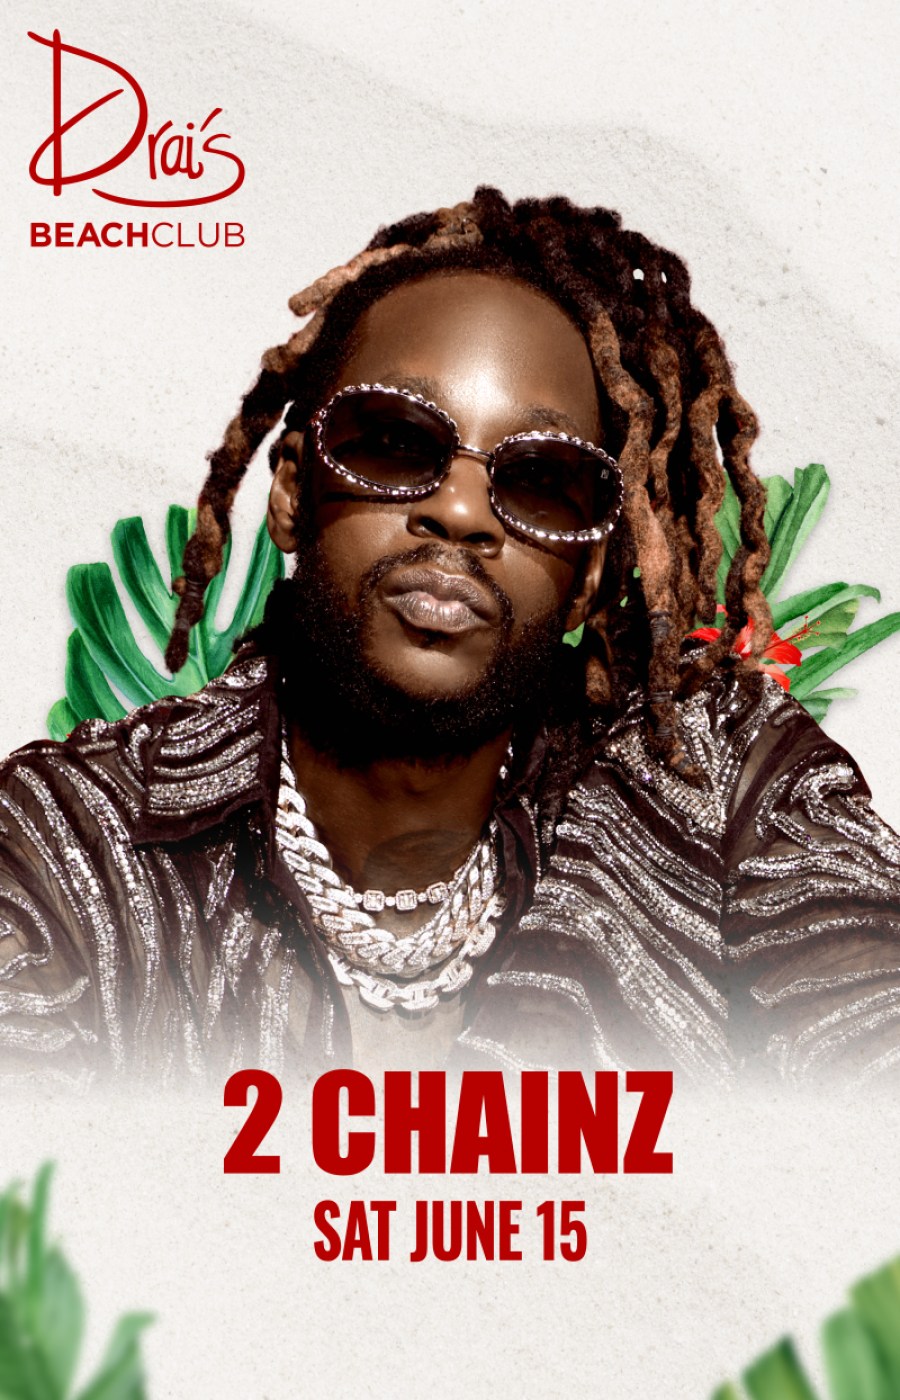 2 Chainz at Drai's Beach Club thumbnail